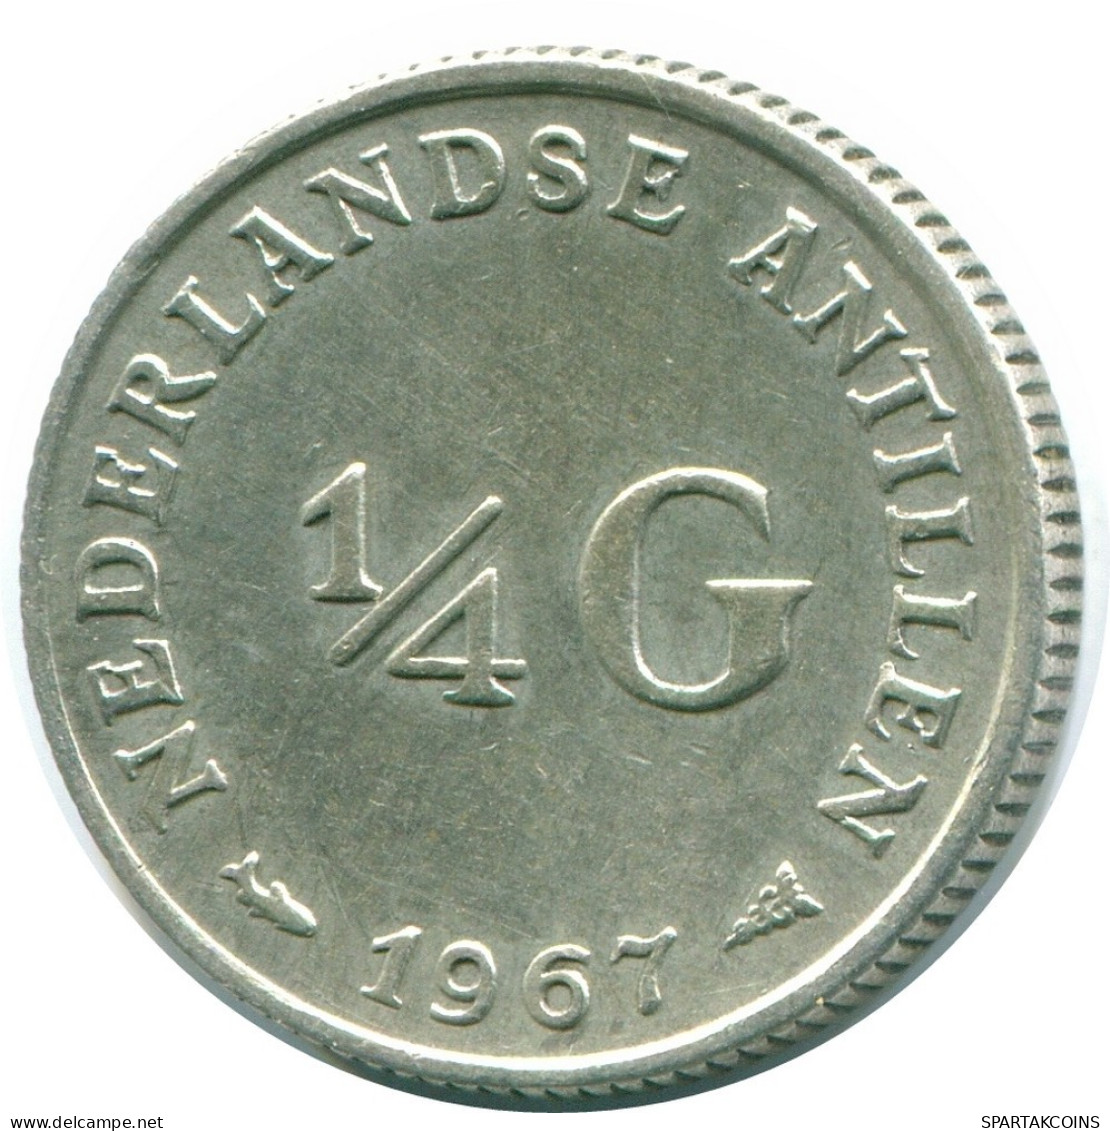 1/4 GULDEN 1967 NIEDERLÄNDISCHE ANTILLEN SILBER Koloniale Münze #NL11463.4.D.A - Antilles Néerlandaises